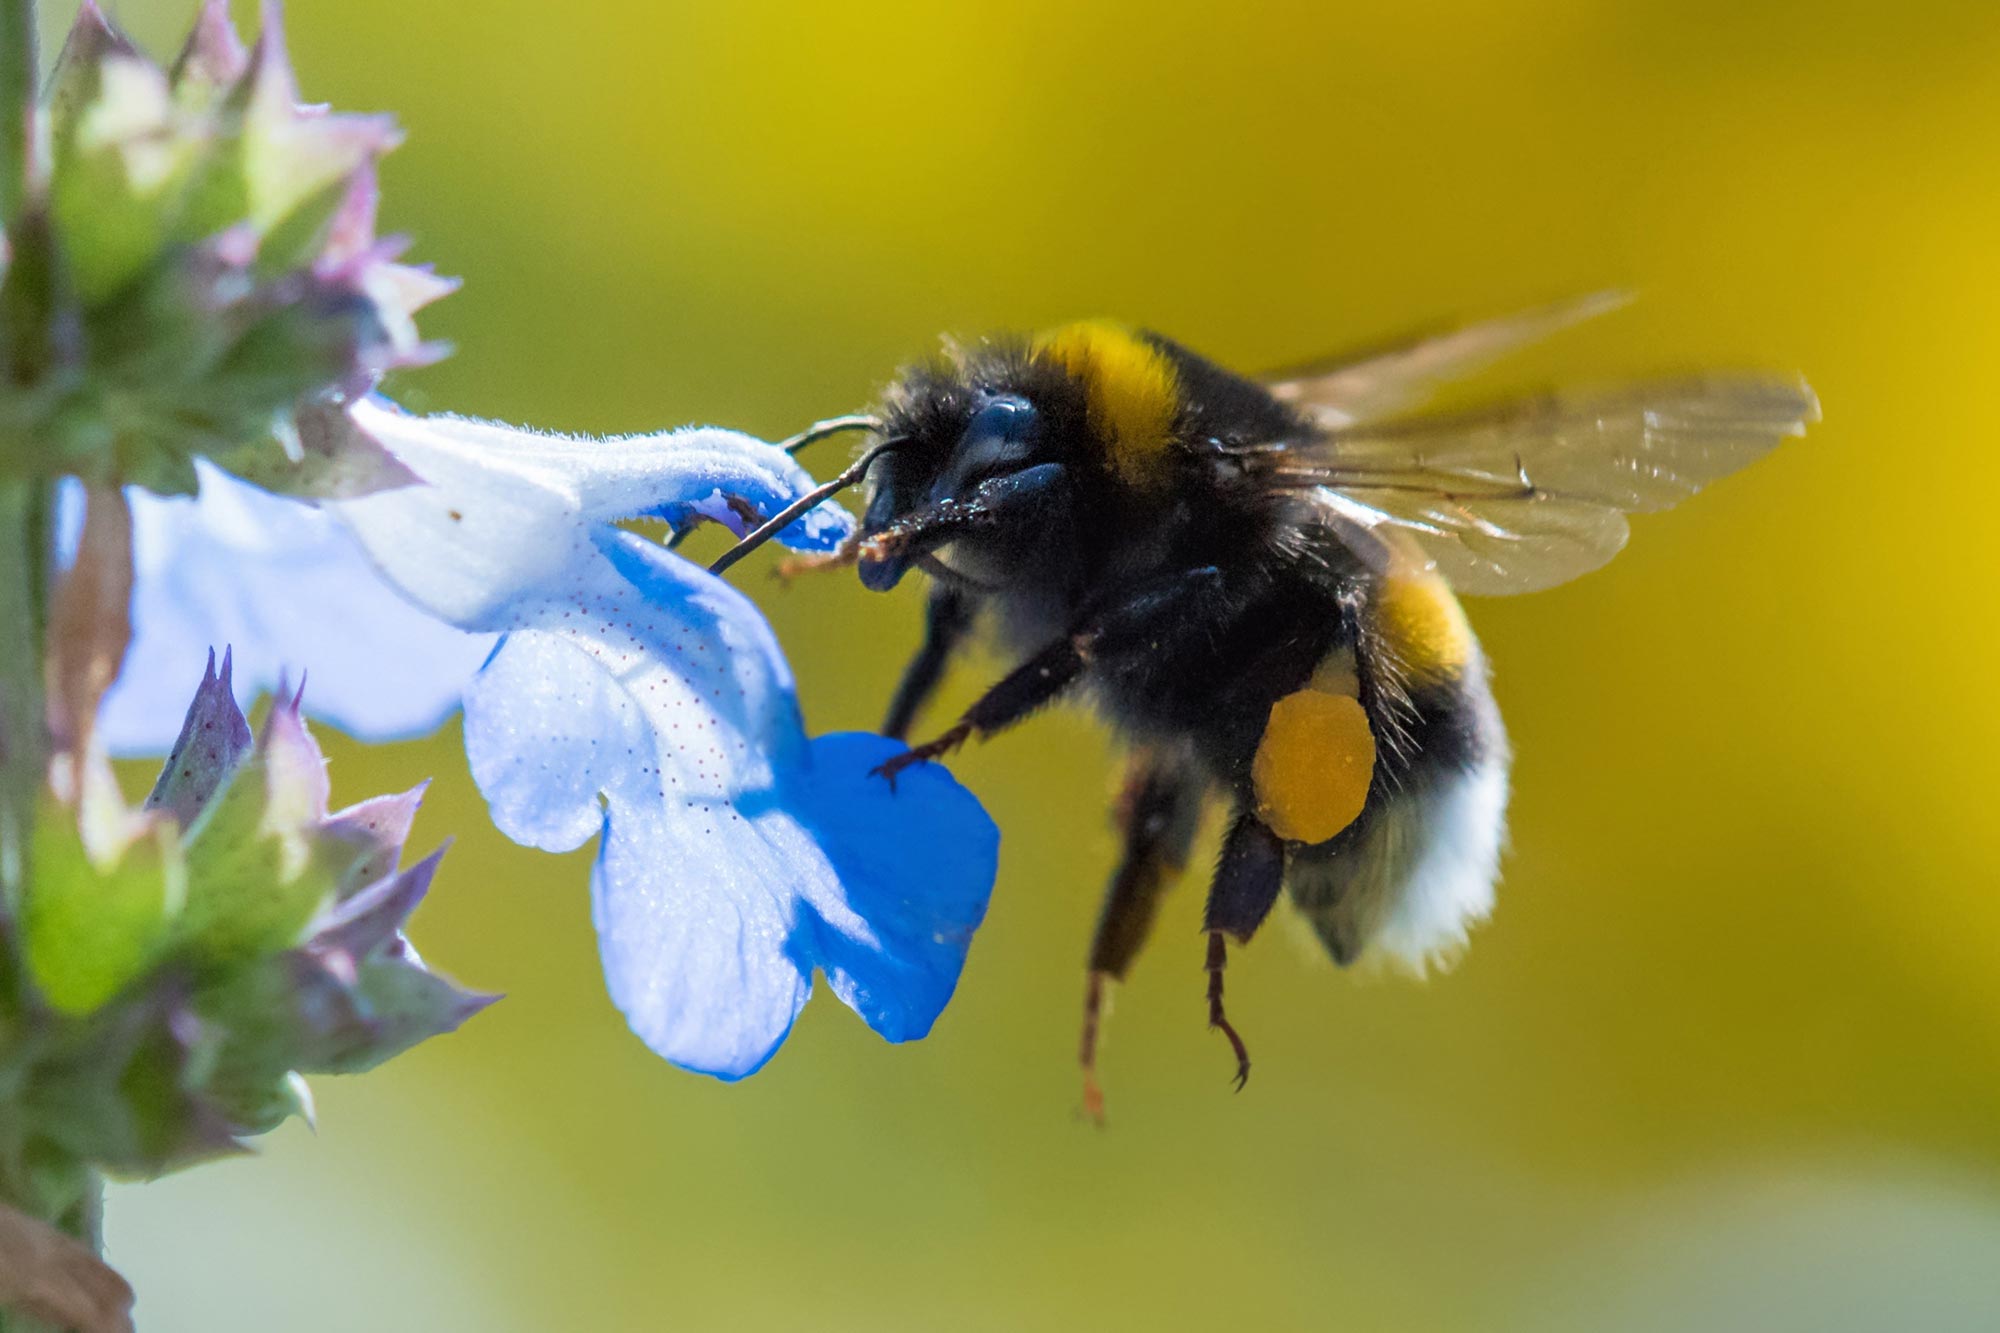 A bumblebee flies a flower close